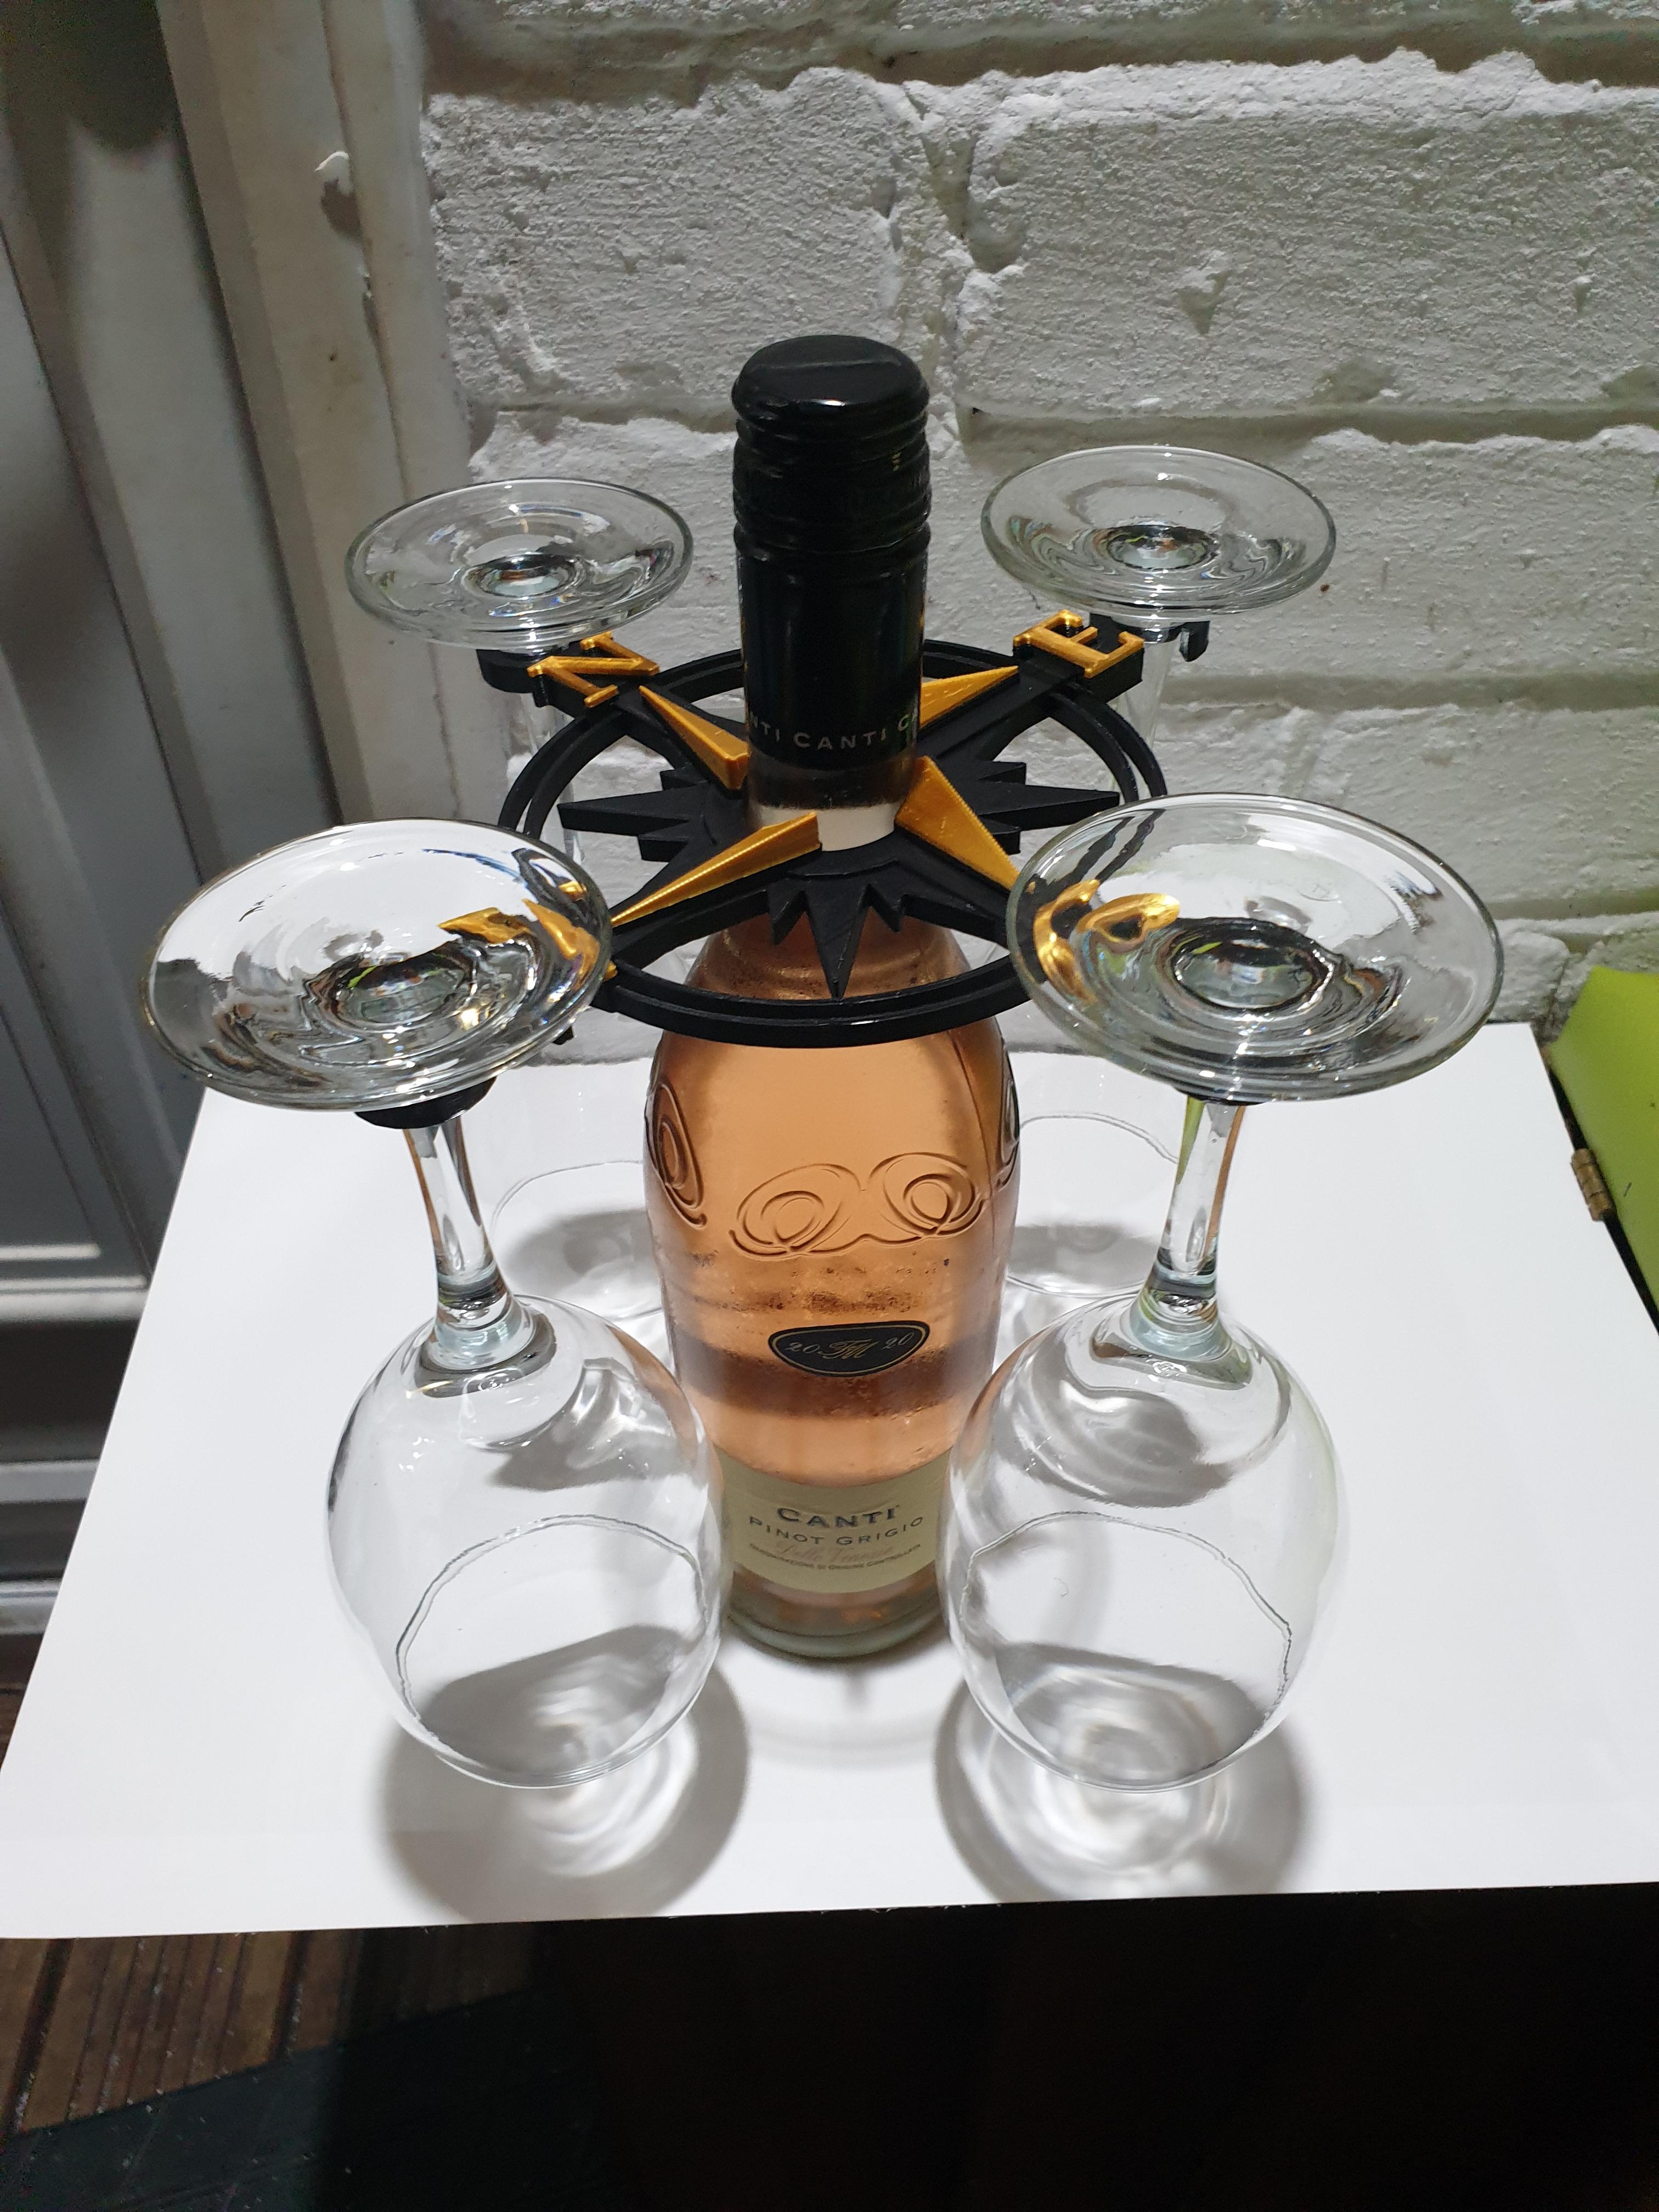  prosecco 4 wine glass stand 3d model